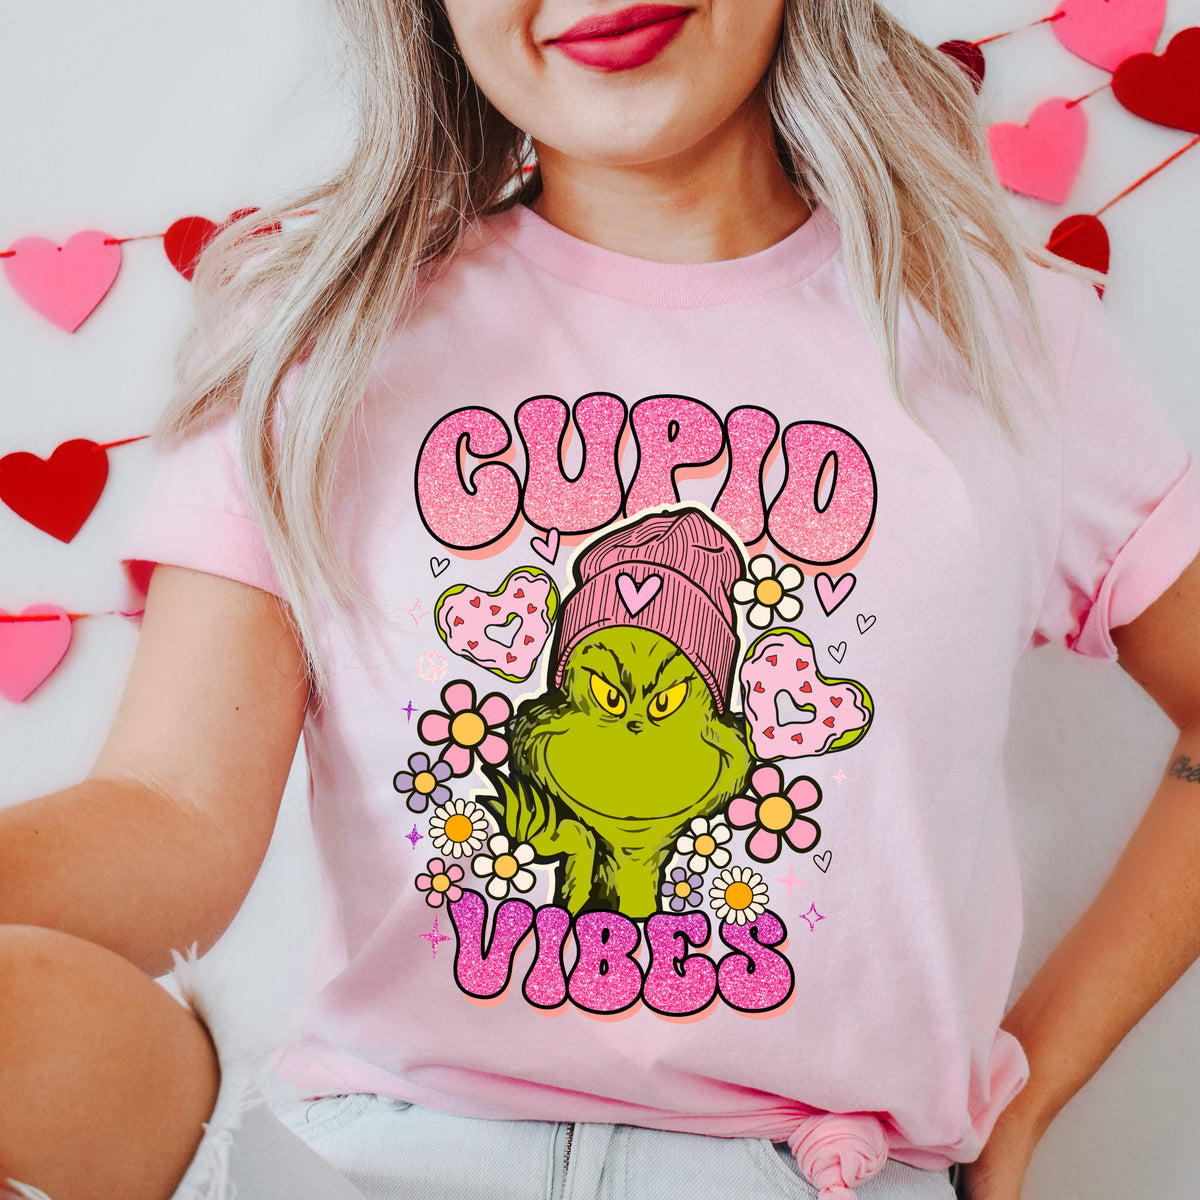 Cupid Vibes